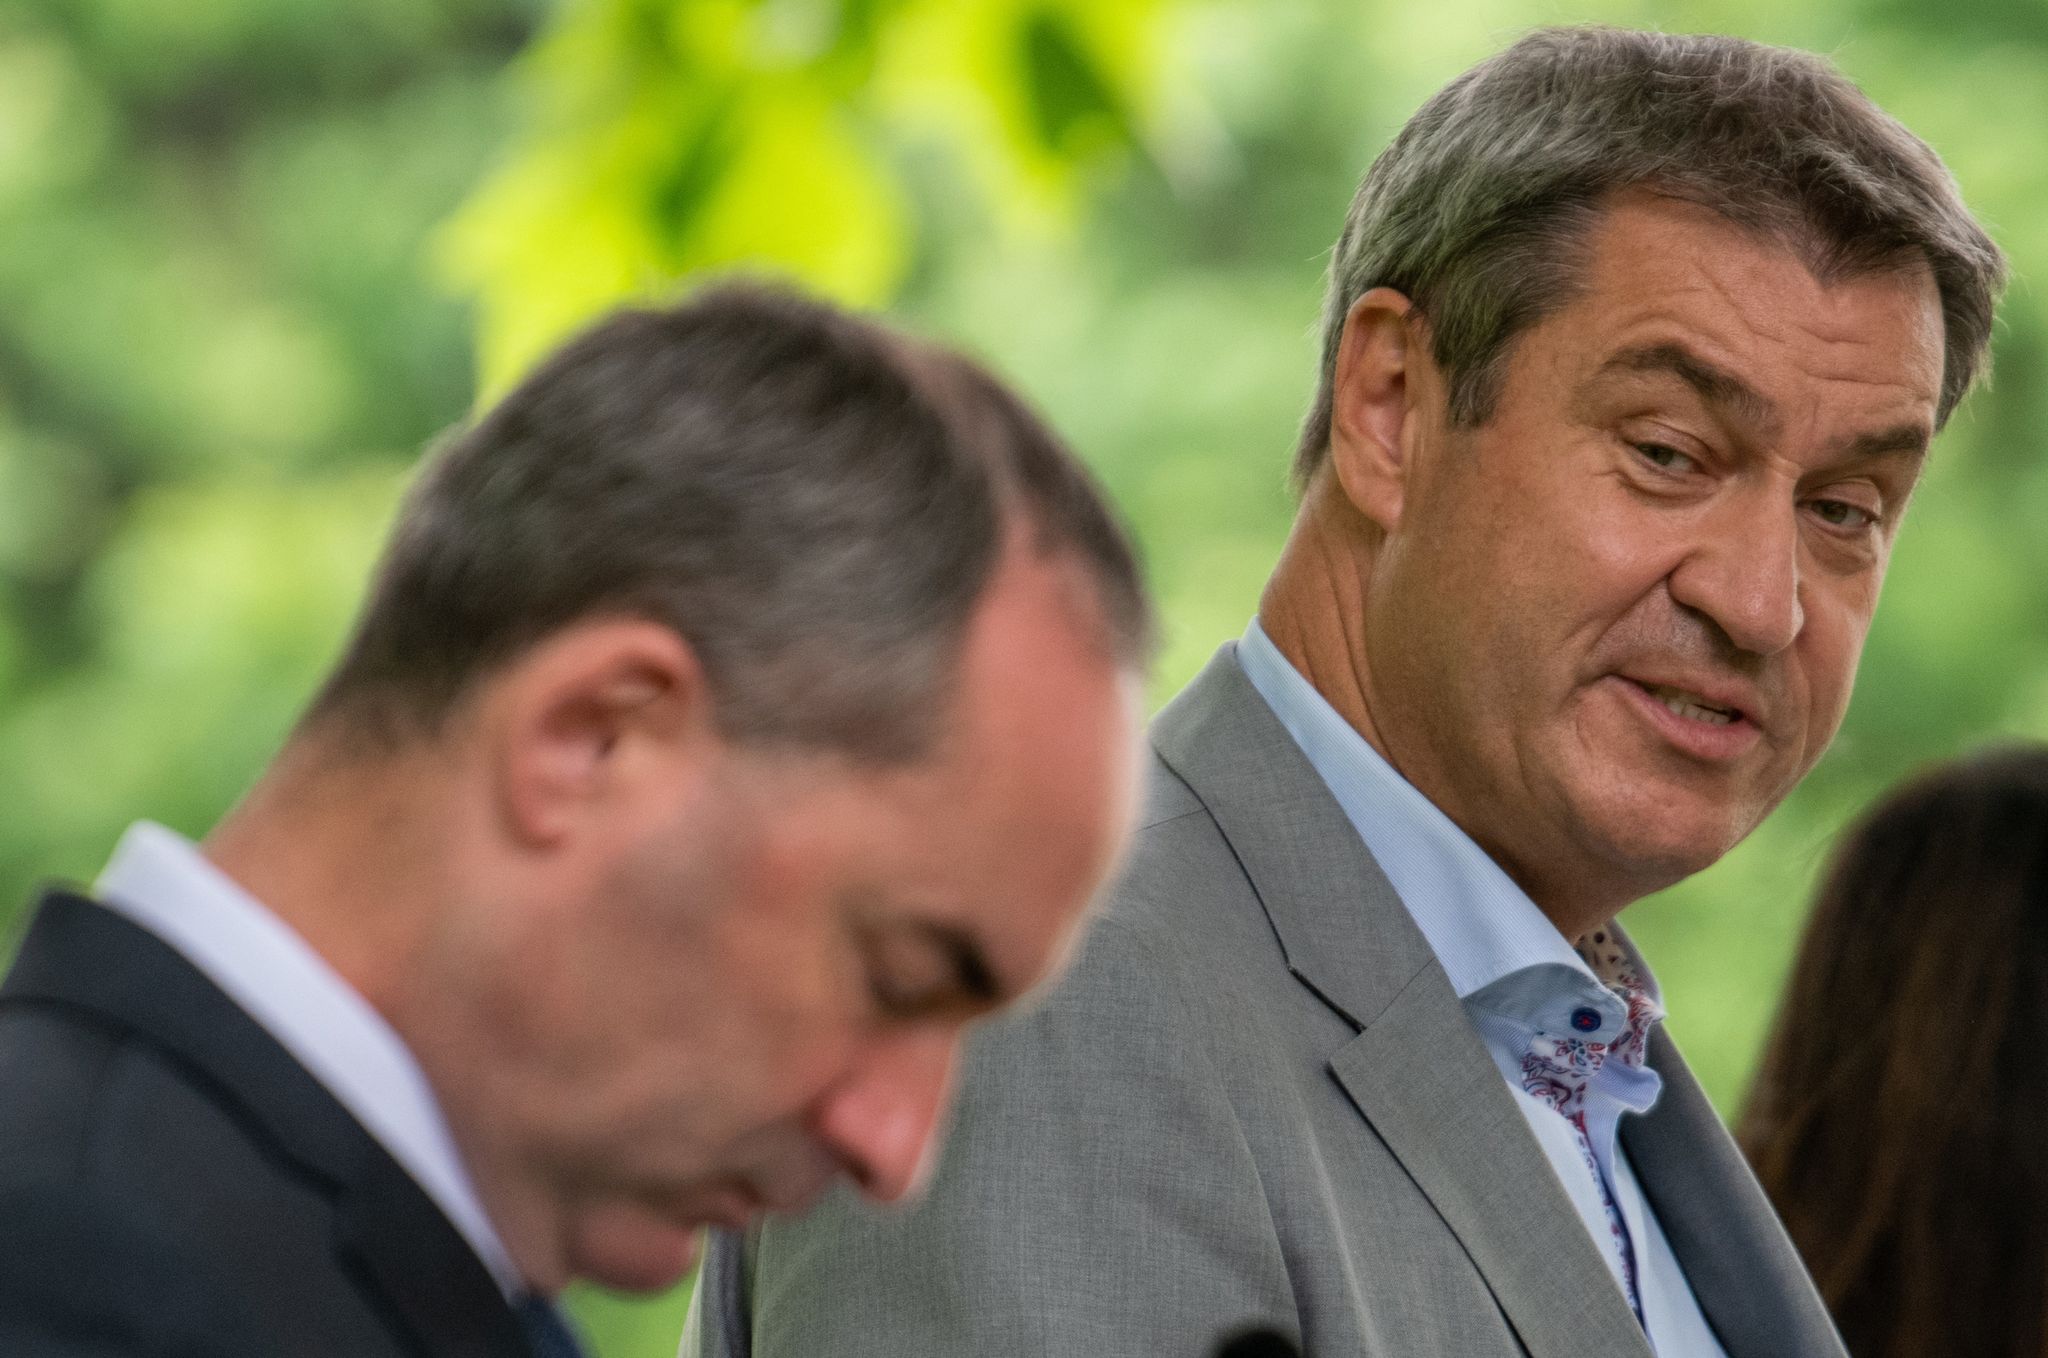 Flugblatt-Skandal: Söder bestellt Aiwanger zu Sonder-Koalitionsausschuss ein